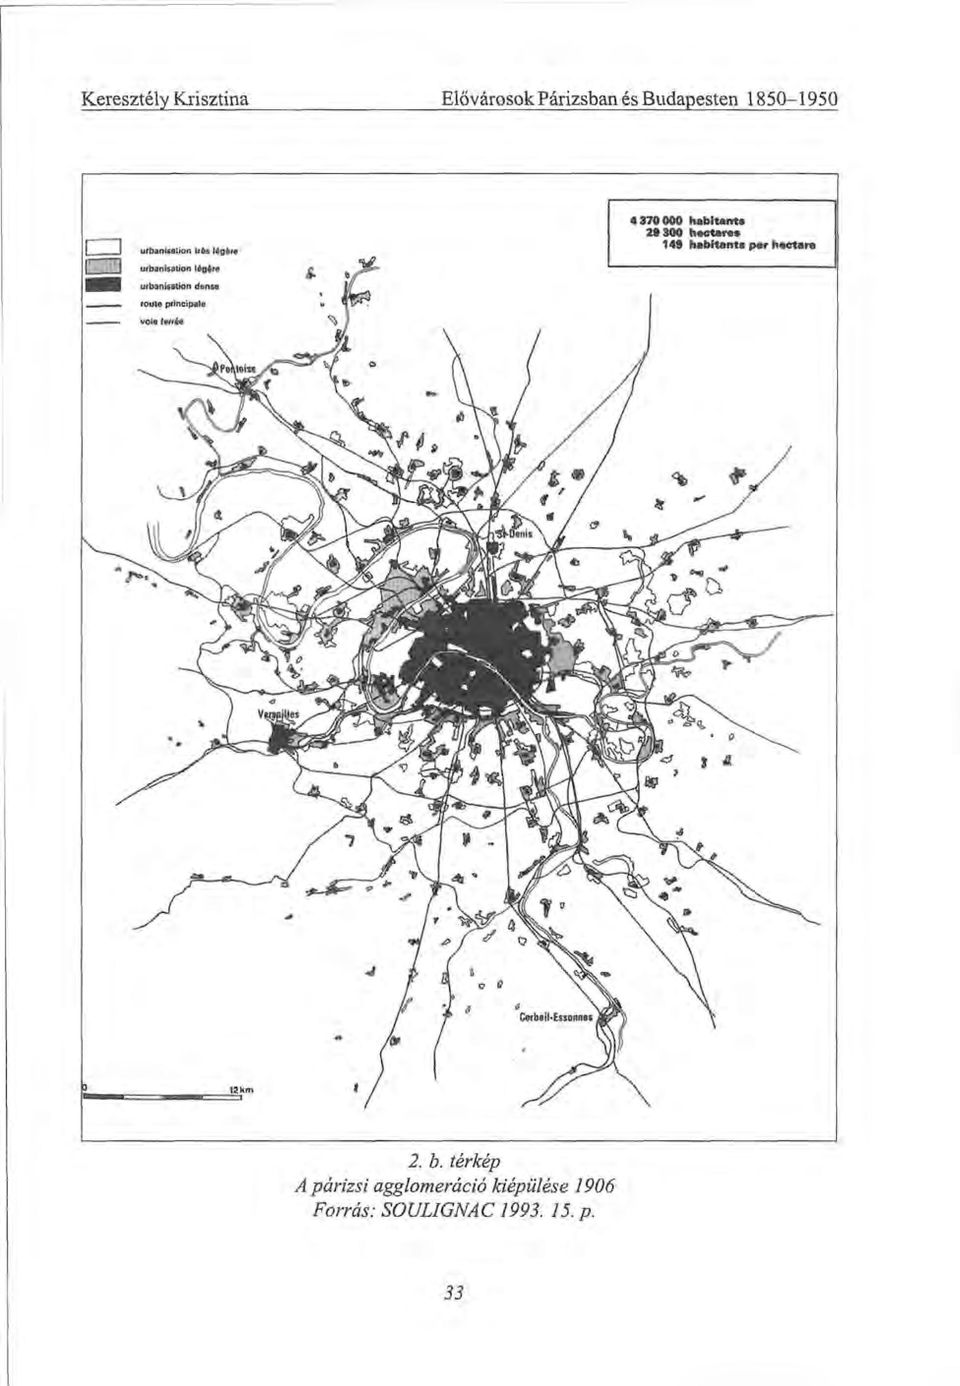 b. térkép A párizsi agglomeráció